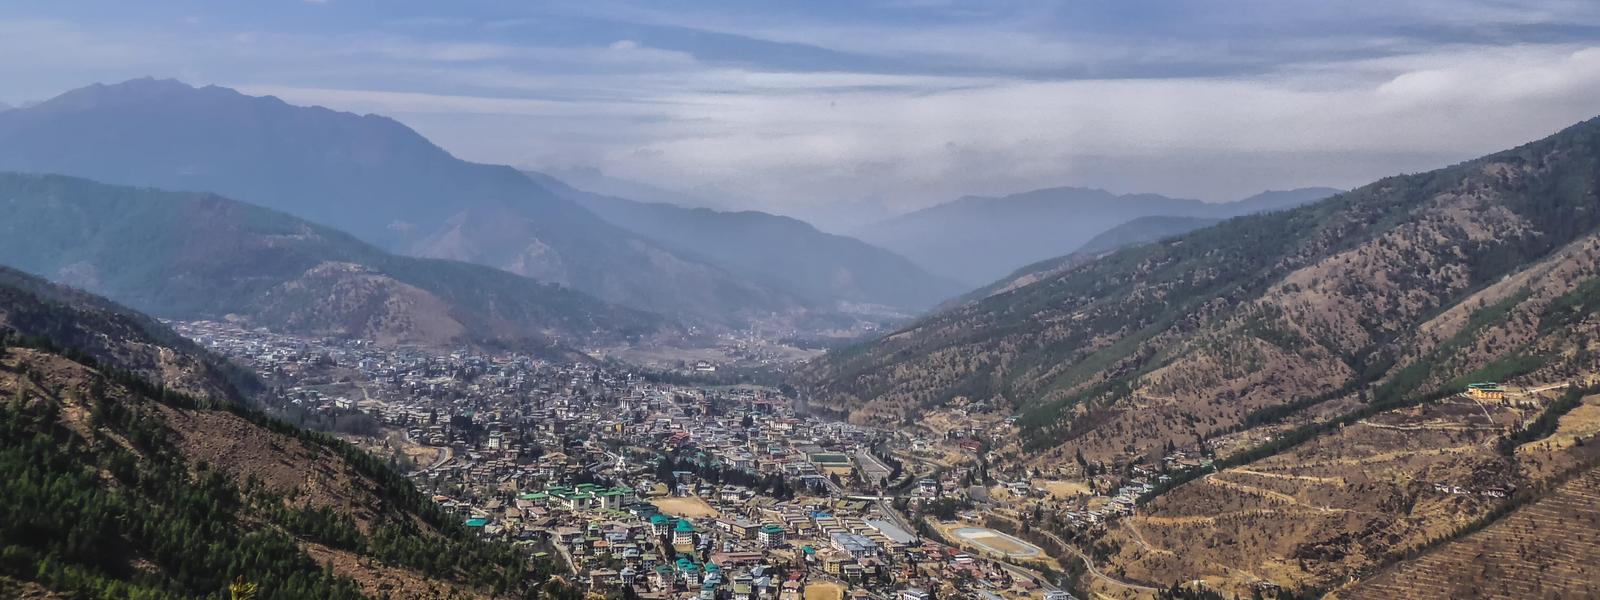 Thimphu overview Bhutan